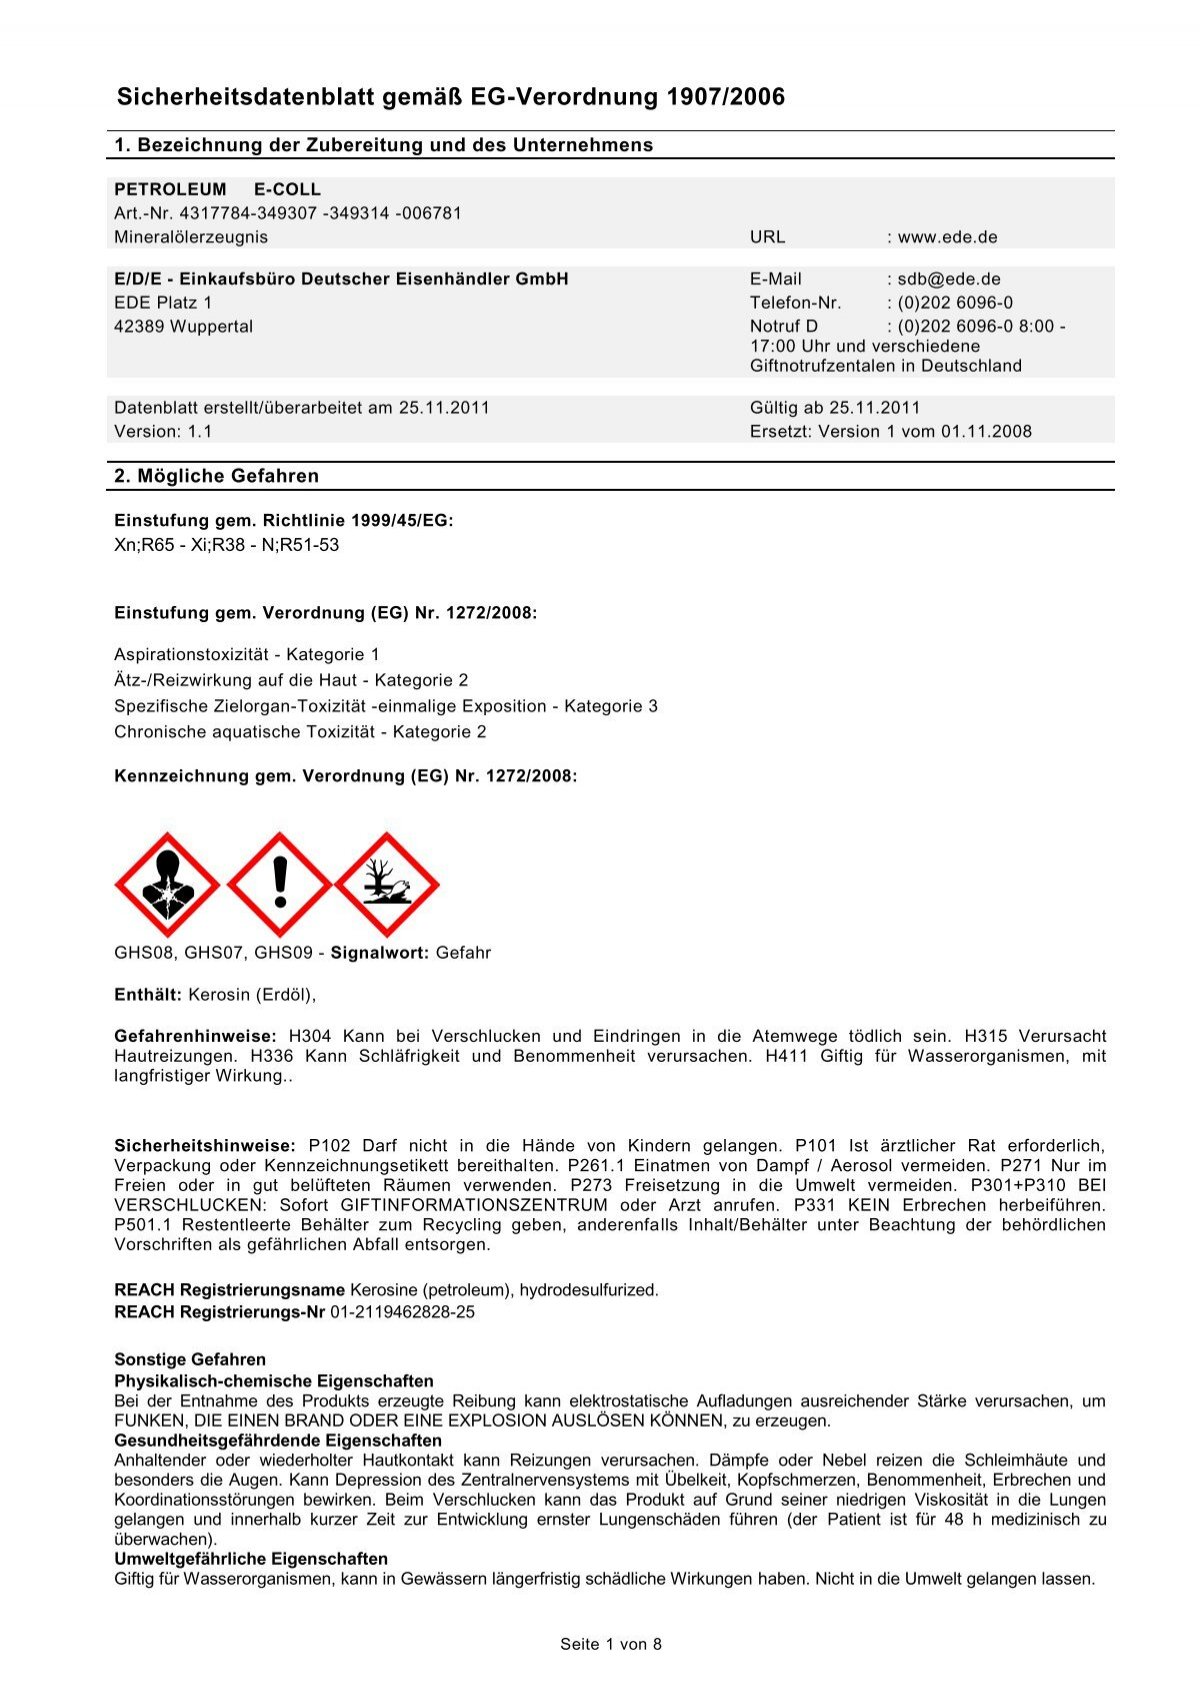 Produktinformationen für Endverbraucher gemäß Detergenzienverordnung  (648/2004/EG)